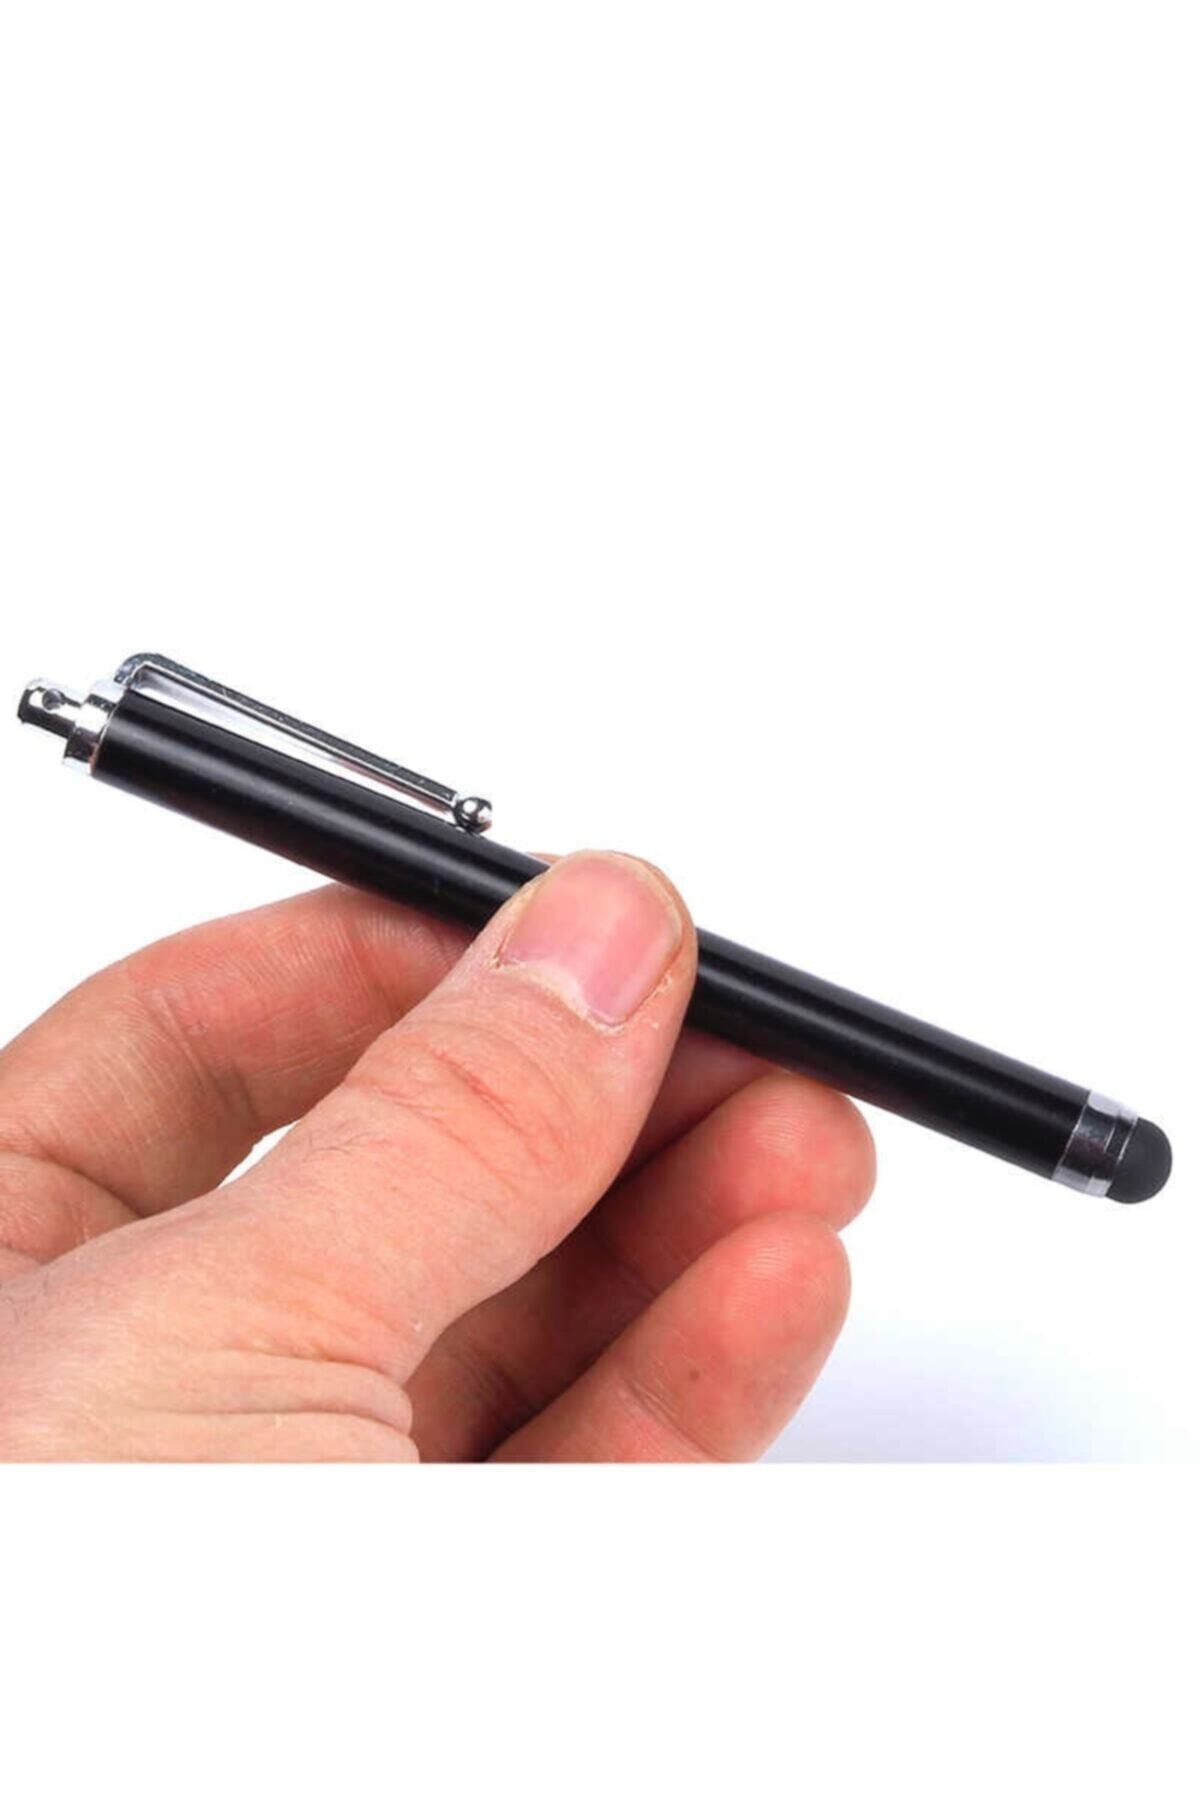 AŞKSESUAR Dokunmatik Tablet Kalemi - Üniversal Silikon Uçlu Tablet Telefon Kalemi